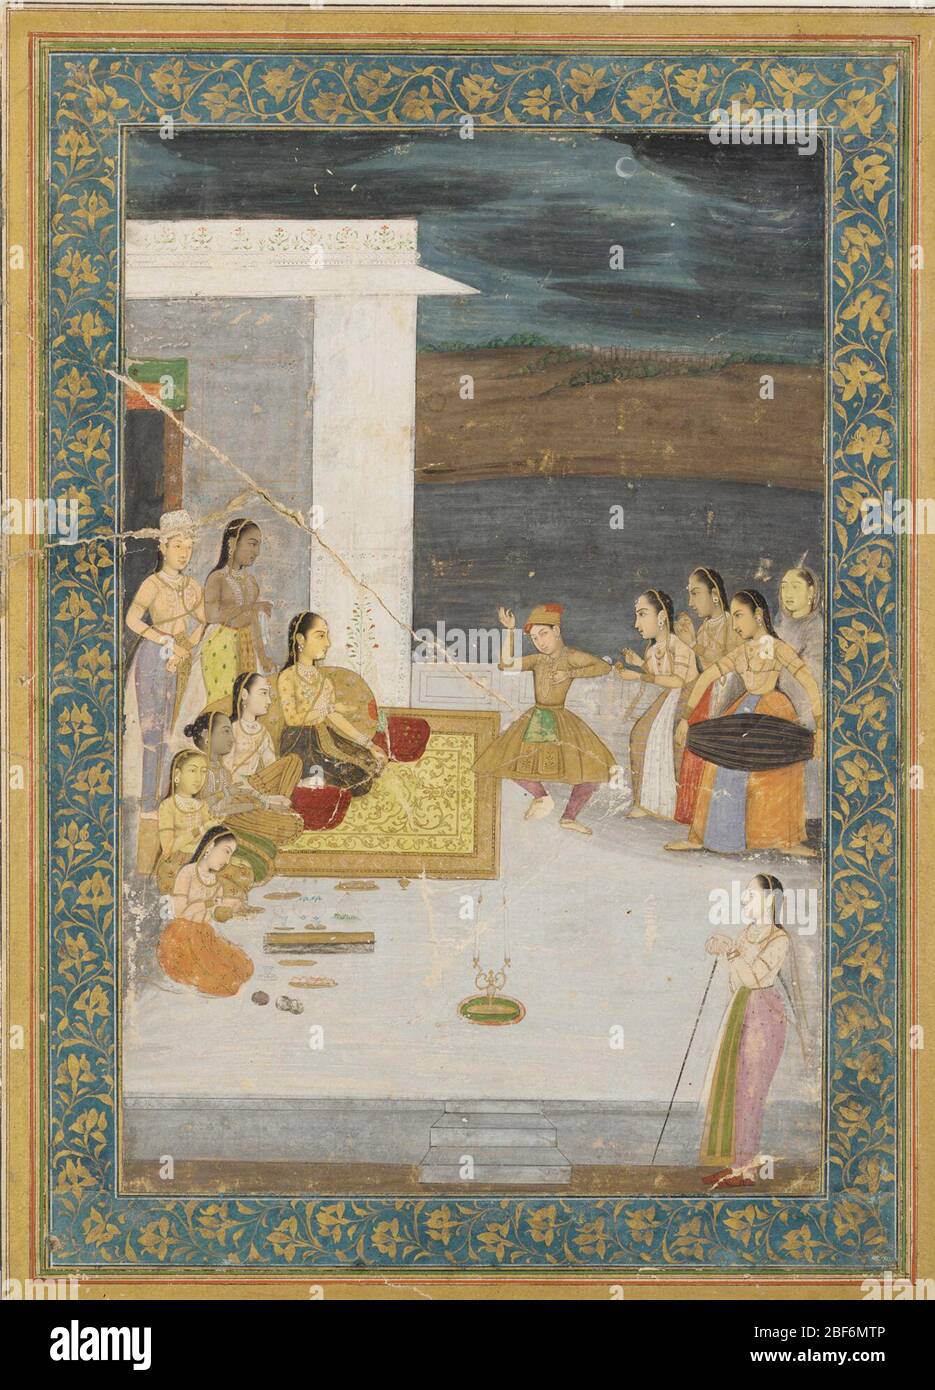 ; India; inizio del XVIII secolo; colore e oro su carta; a x L: 26.8 x 17.7 cm (10 9/16 x 6 15/16 in); dono di Charles Lang Freer Foto Stock